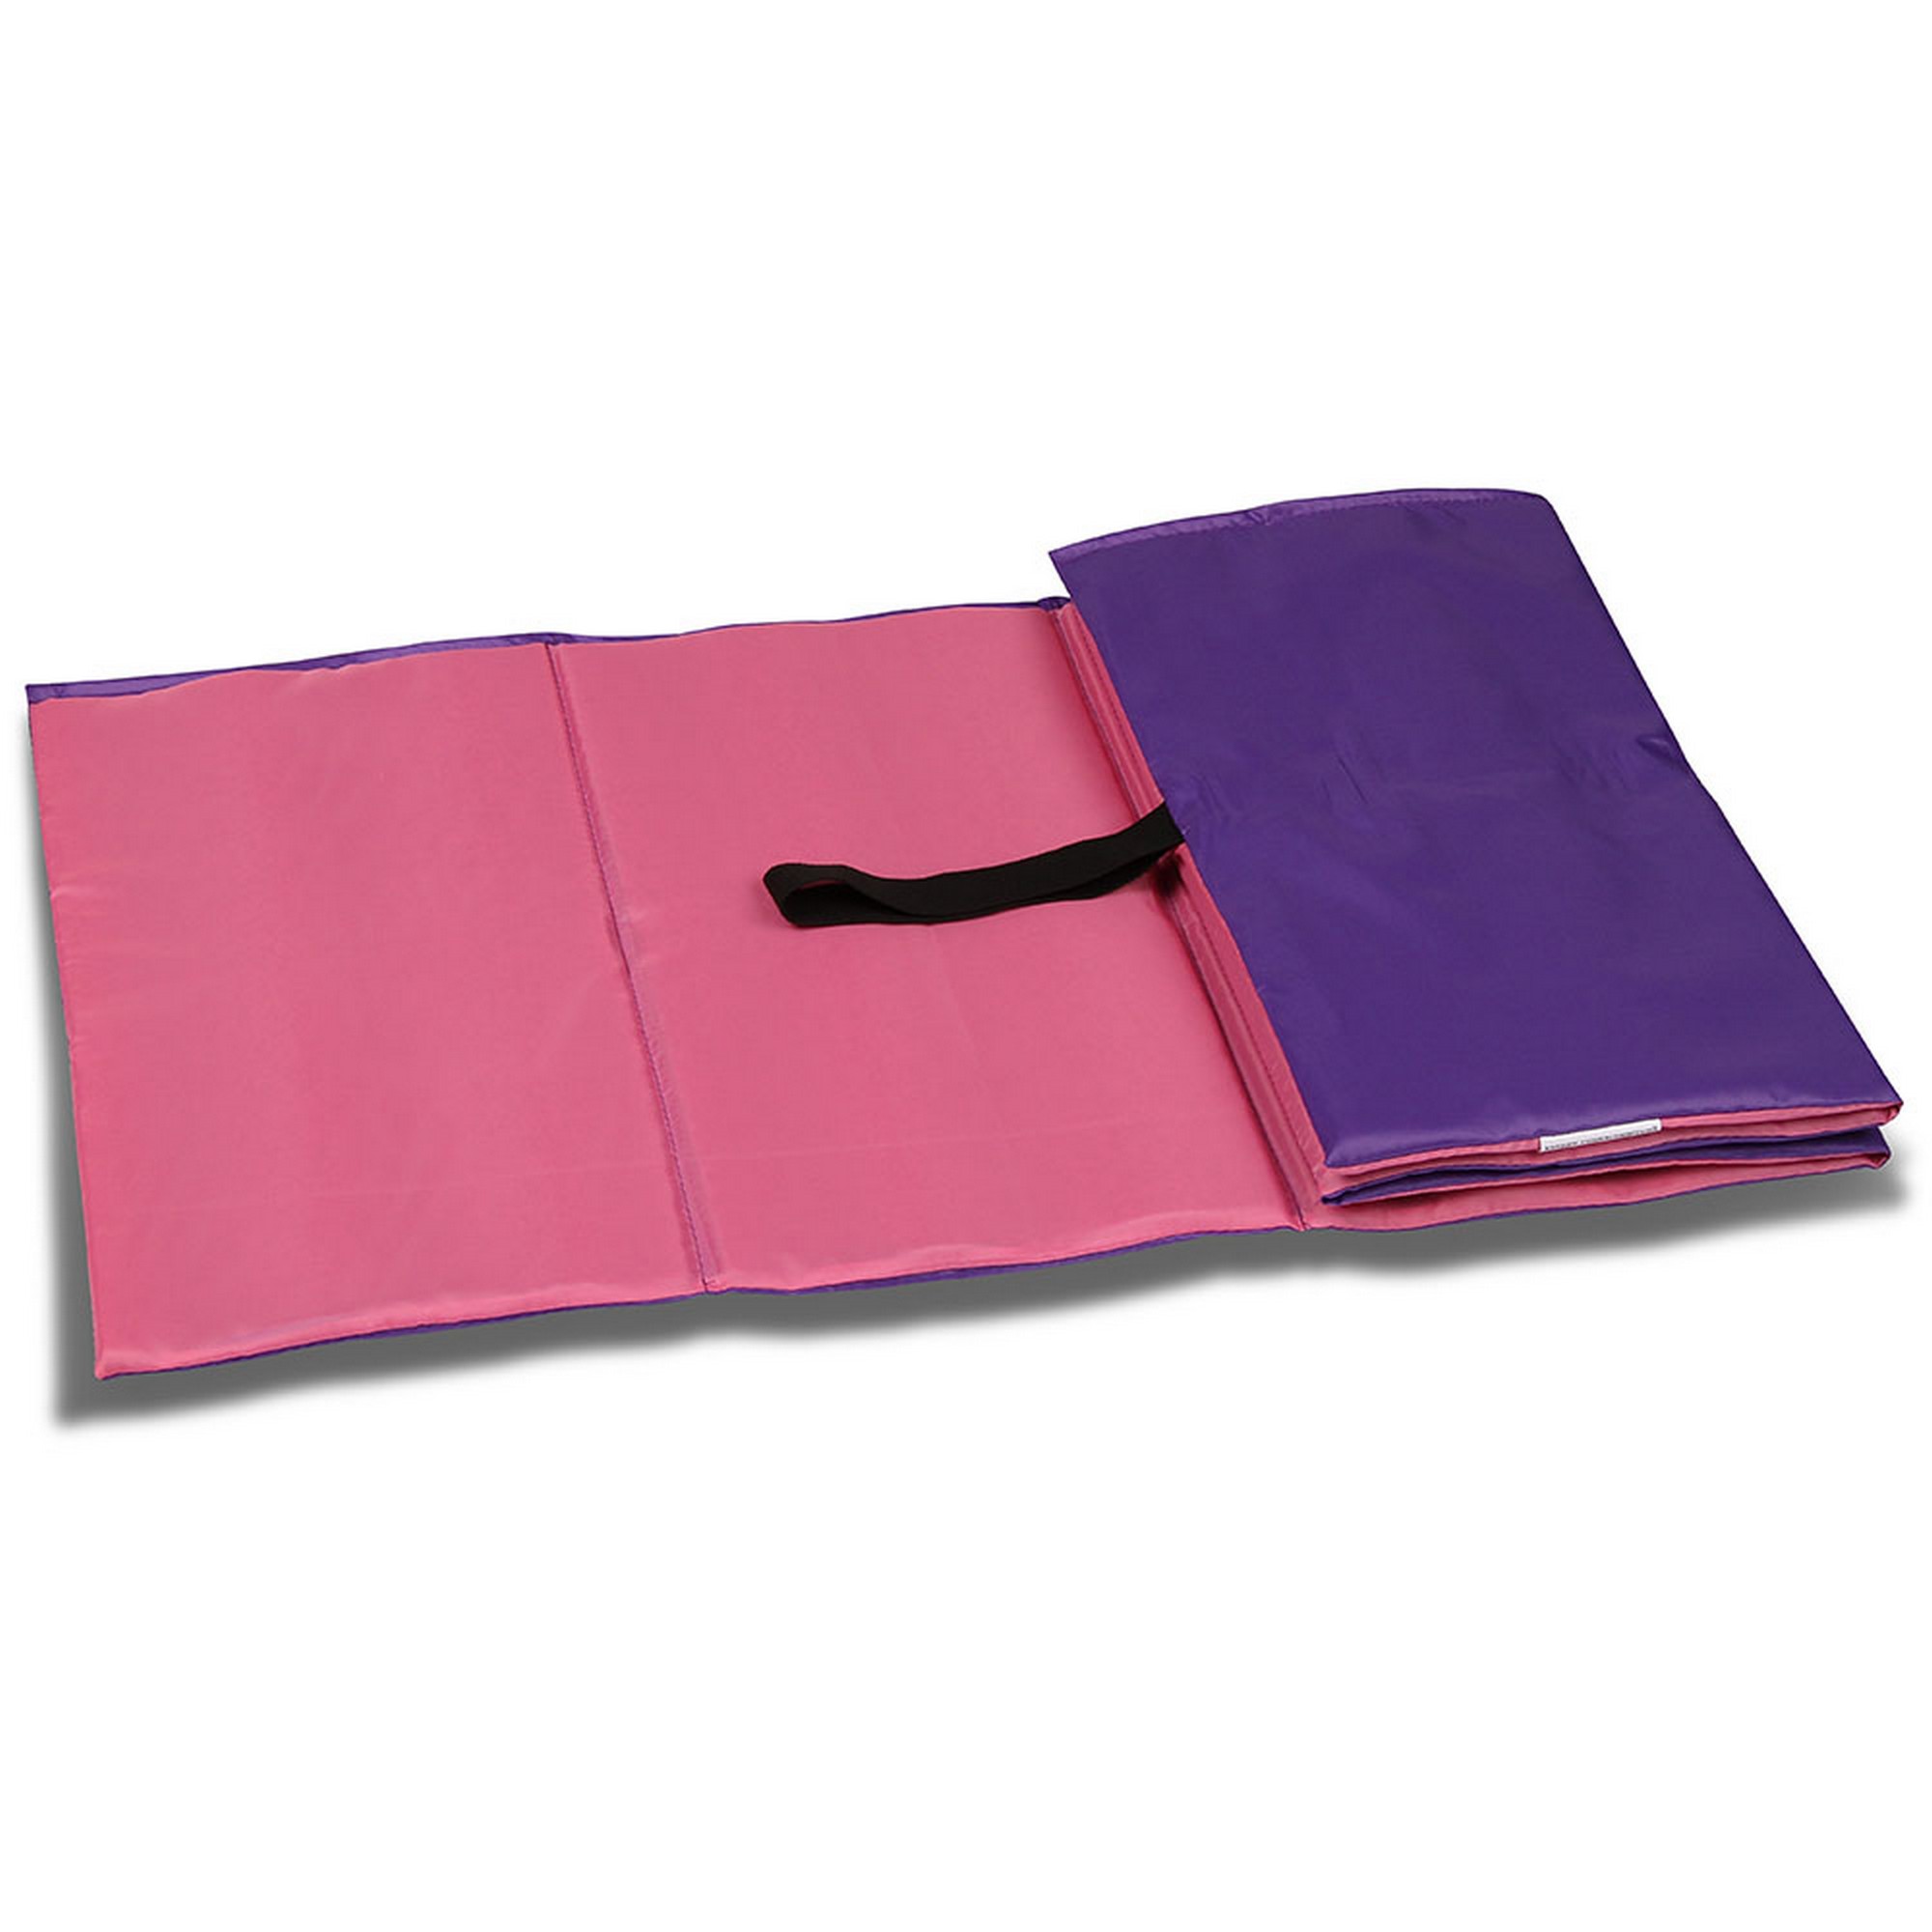 Коврик гимнастический детский Indigo полиэстер, стенофон SM-043-PV розово-фиолетовый 2000_2000